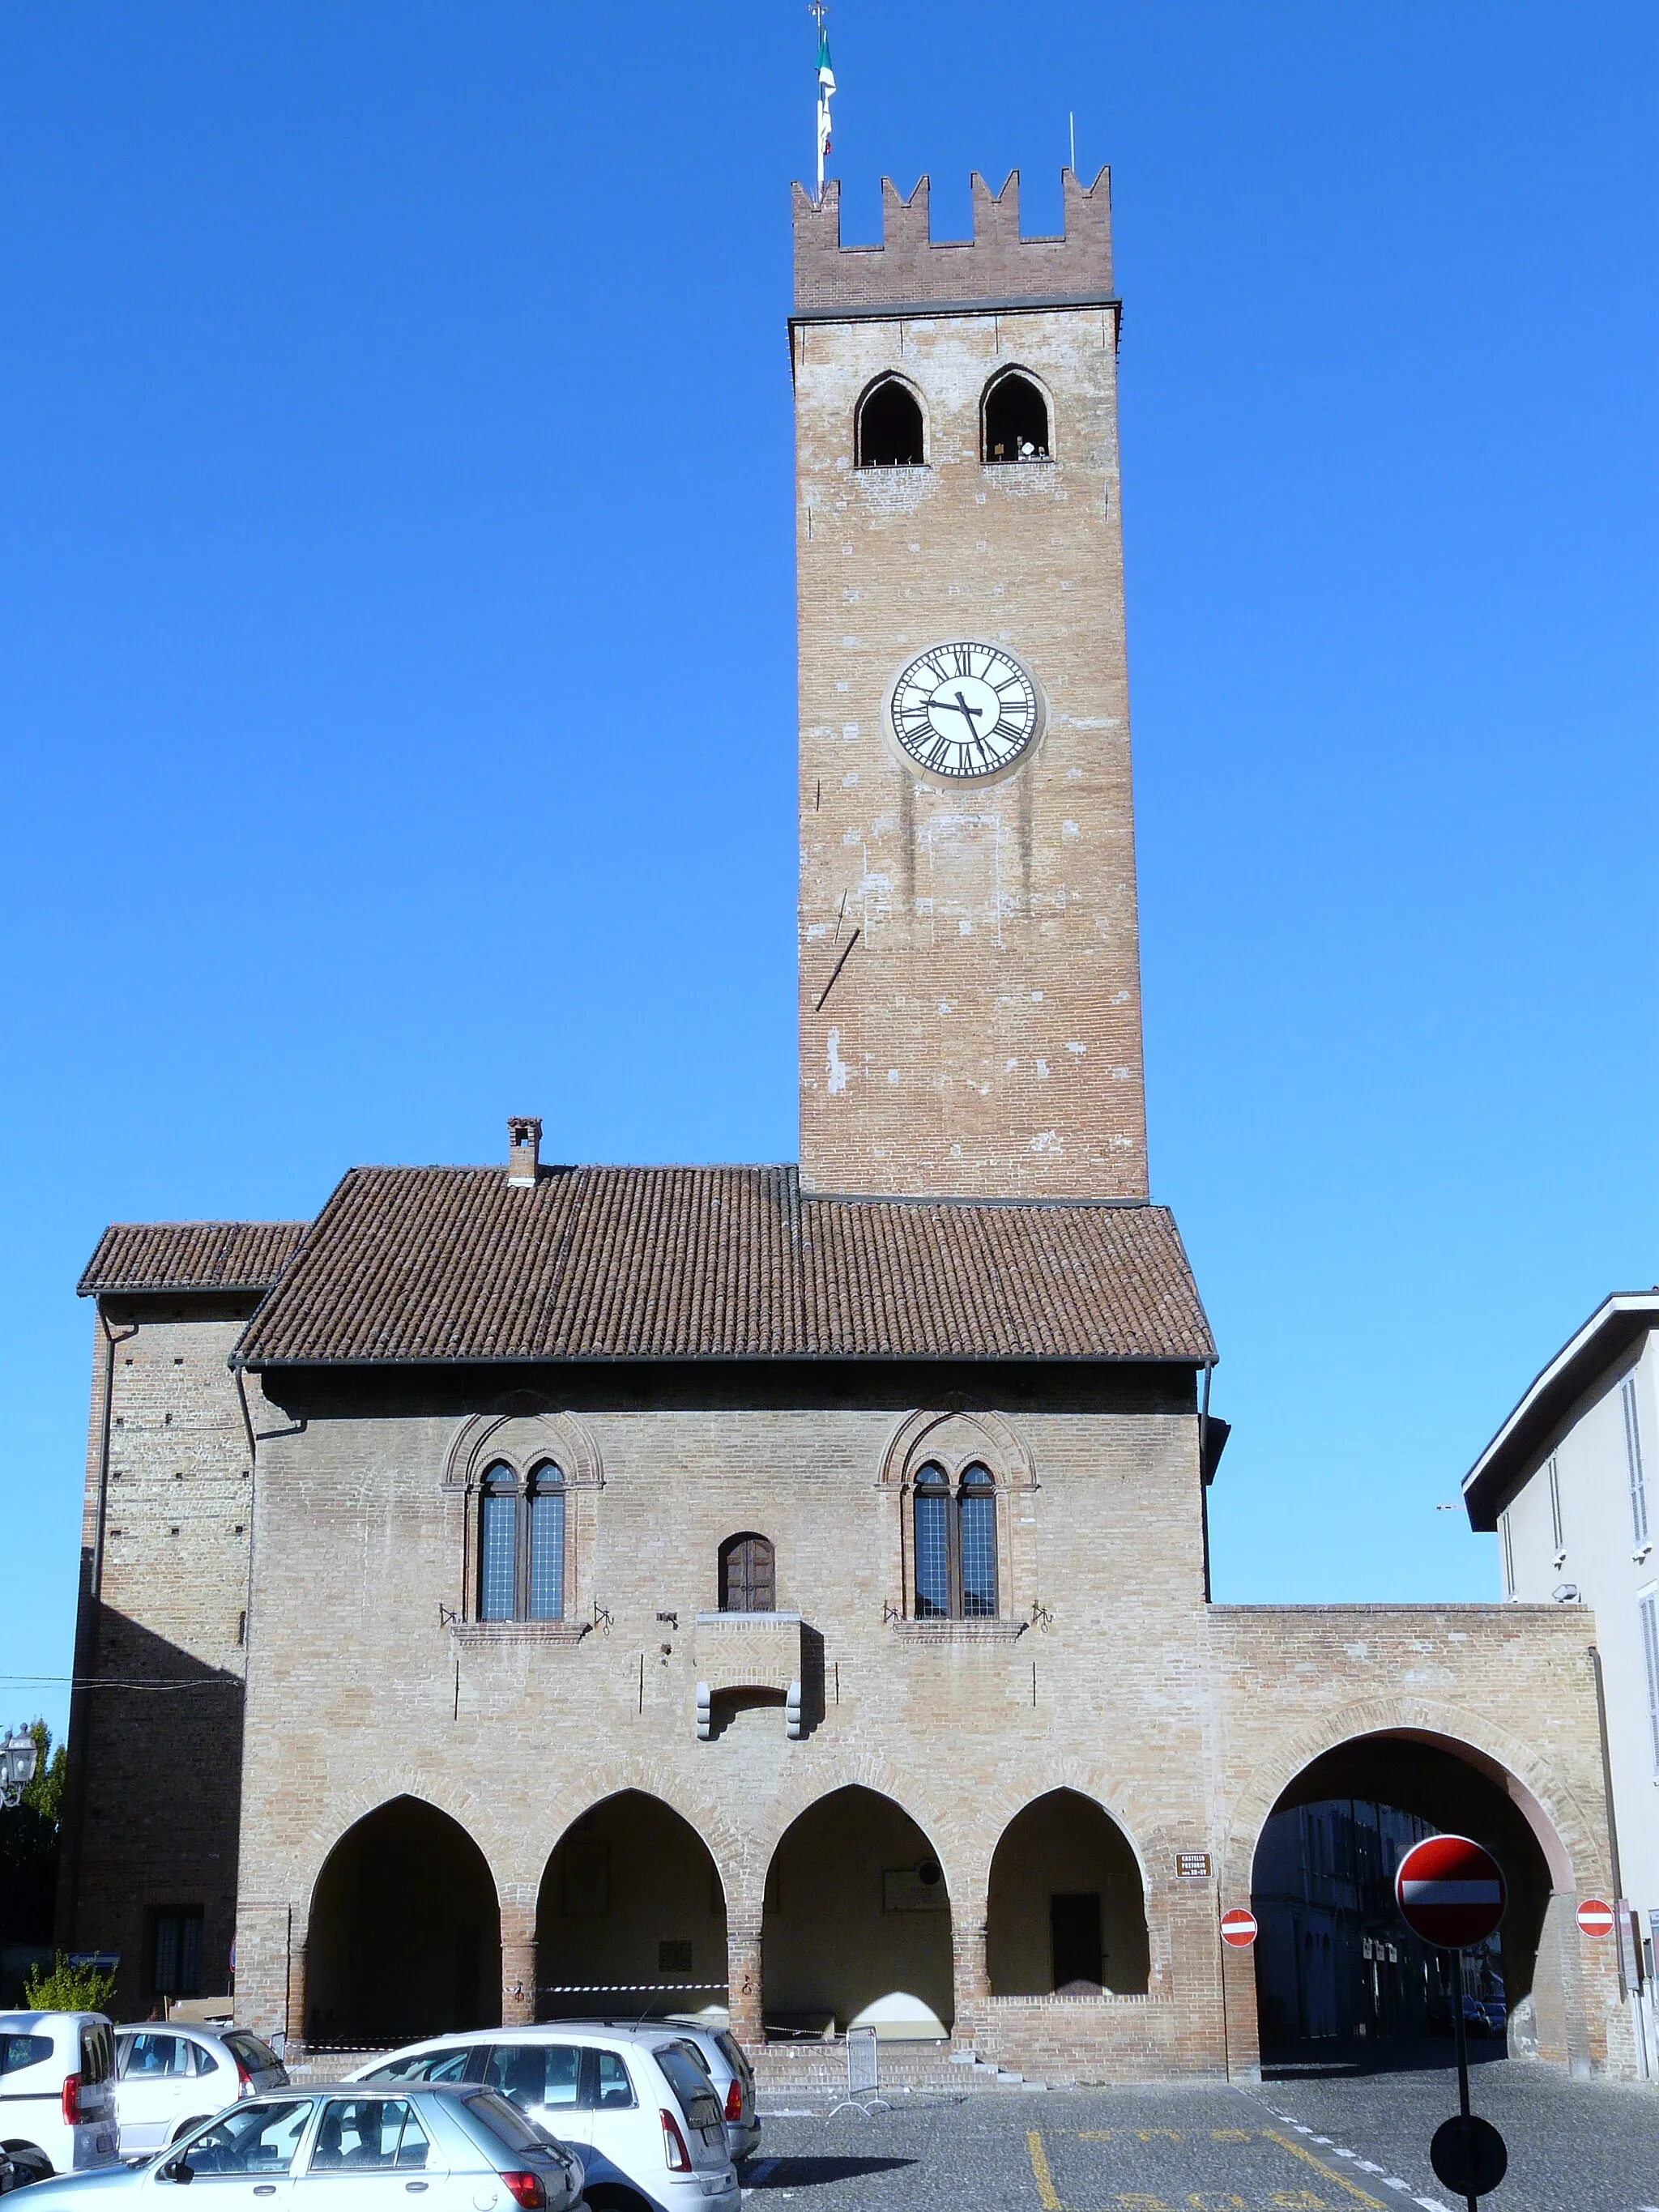 Image of Castelnuovo Scrivia